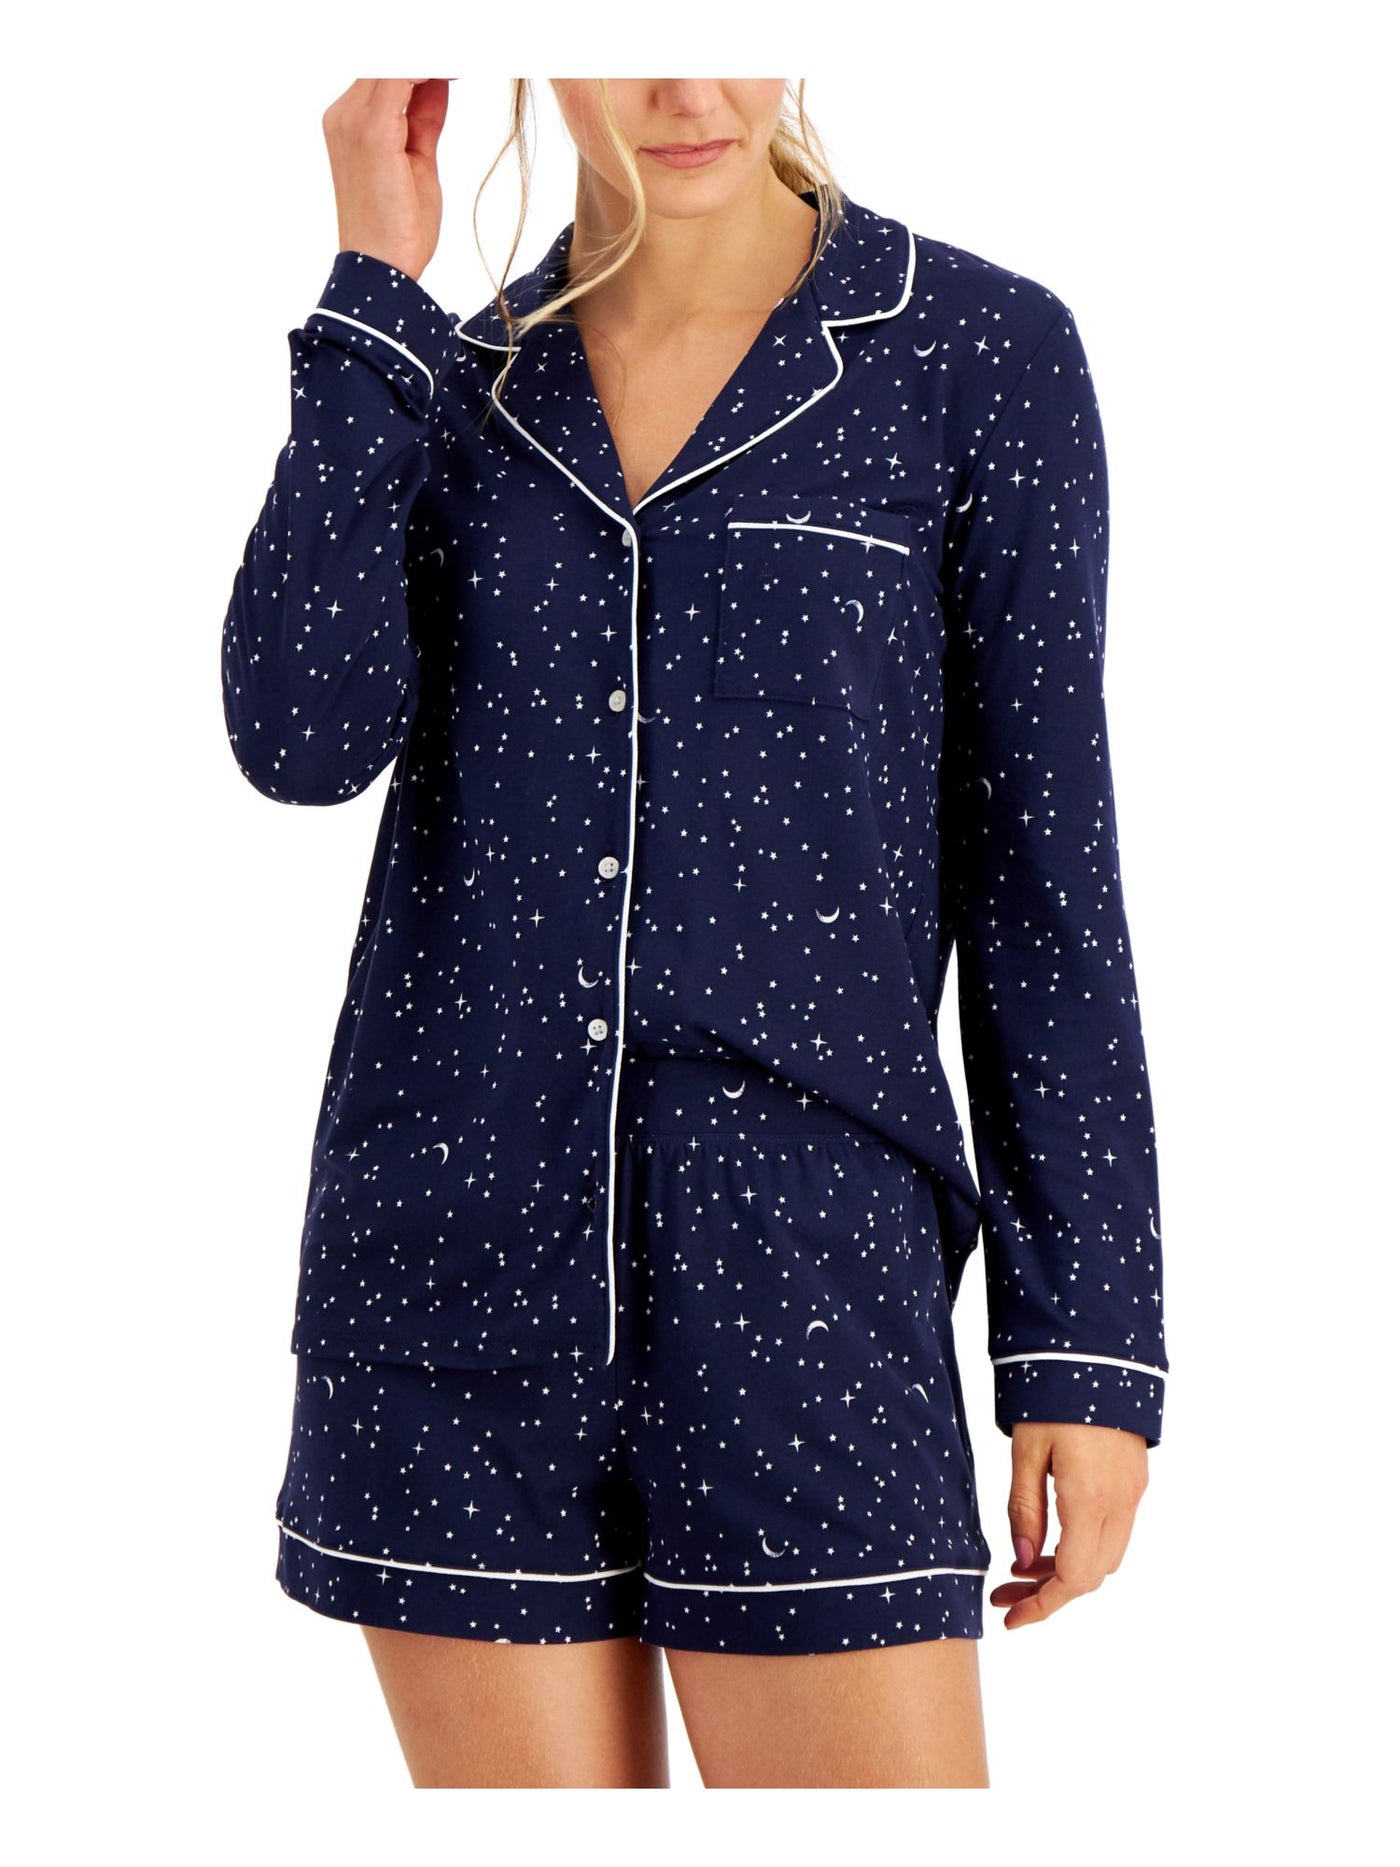 ALFANI Womens Navy Printed Elastic Band Long Sleeve Button Up Top and Shorts Pajamas XS